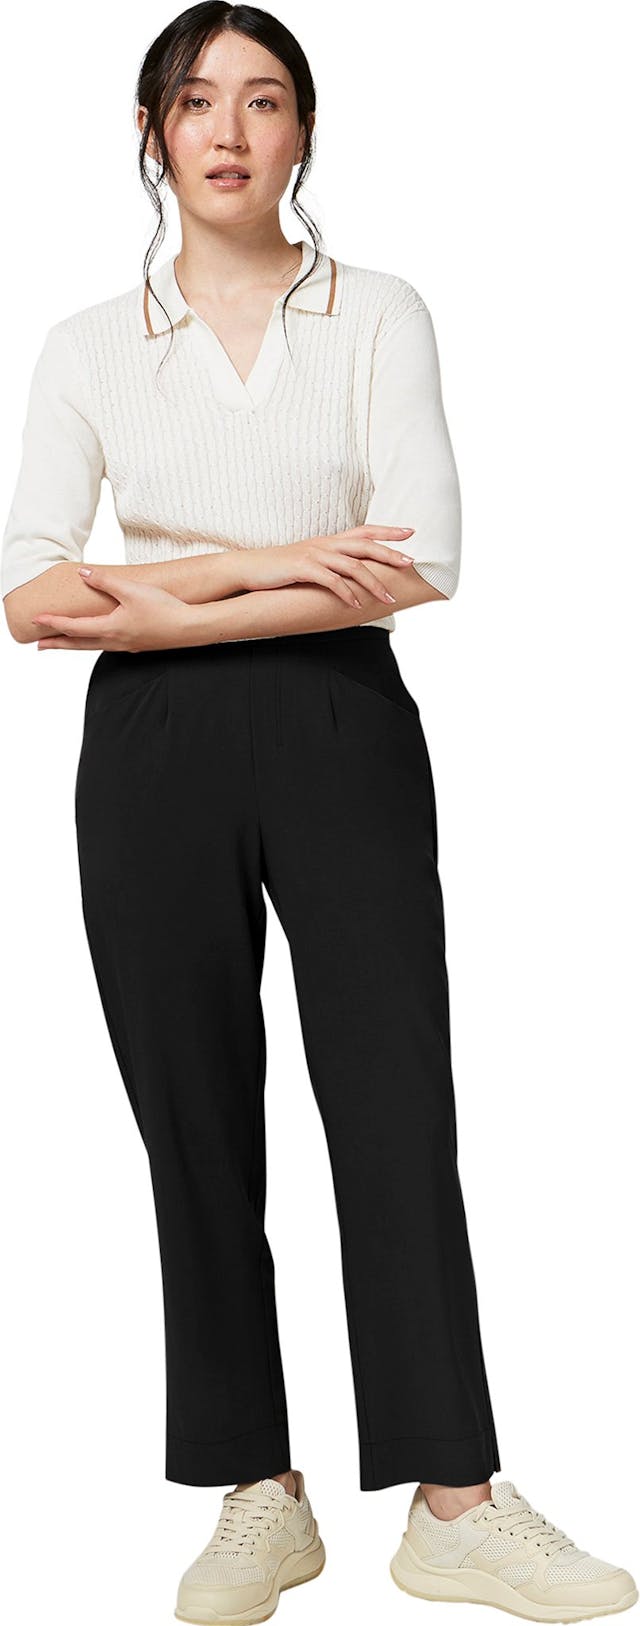 Product image for Roxbury Pants - Women's